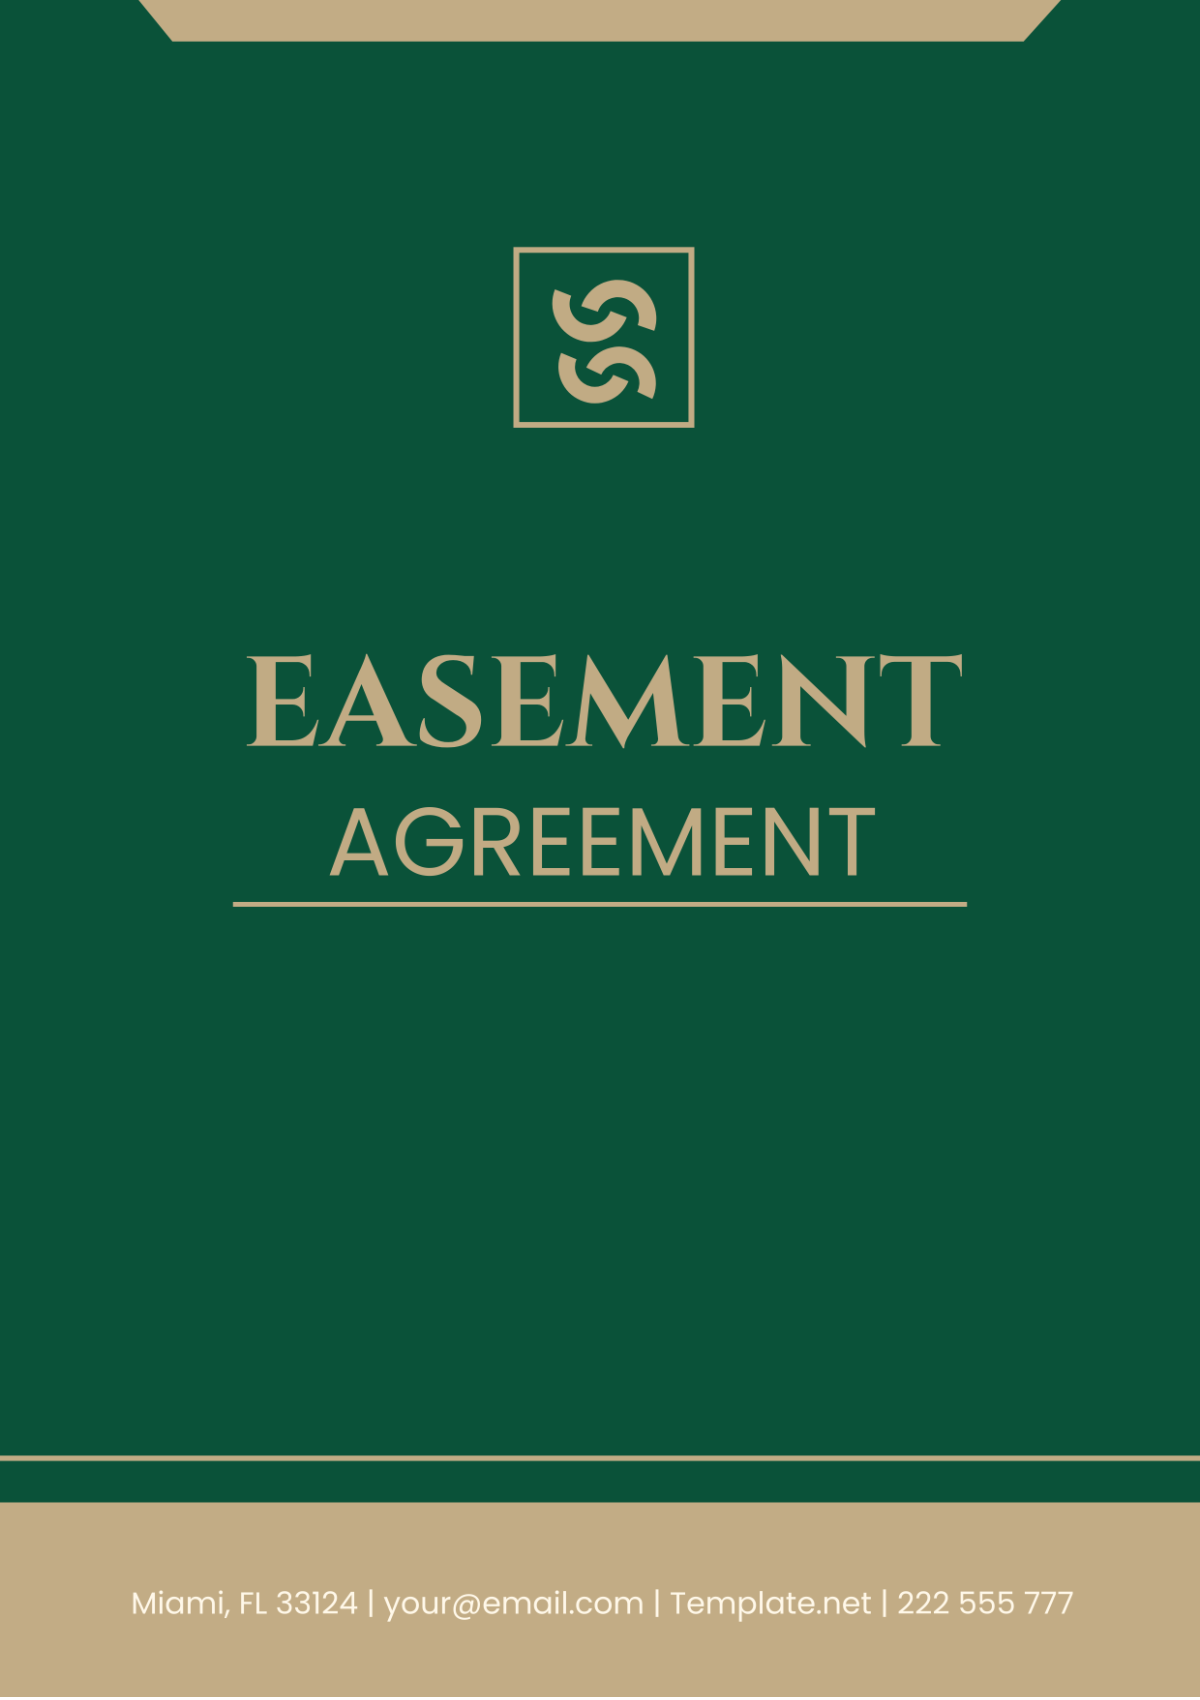 Easement Agreement Template